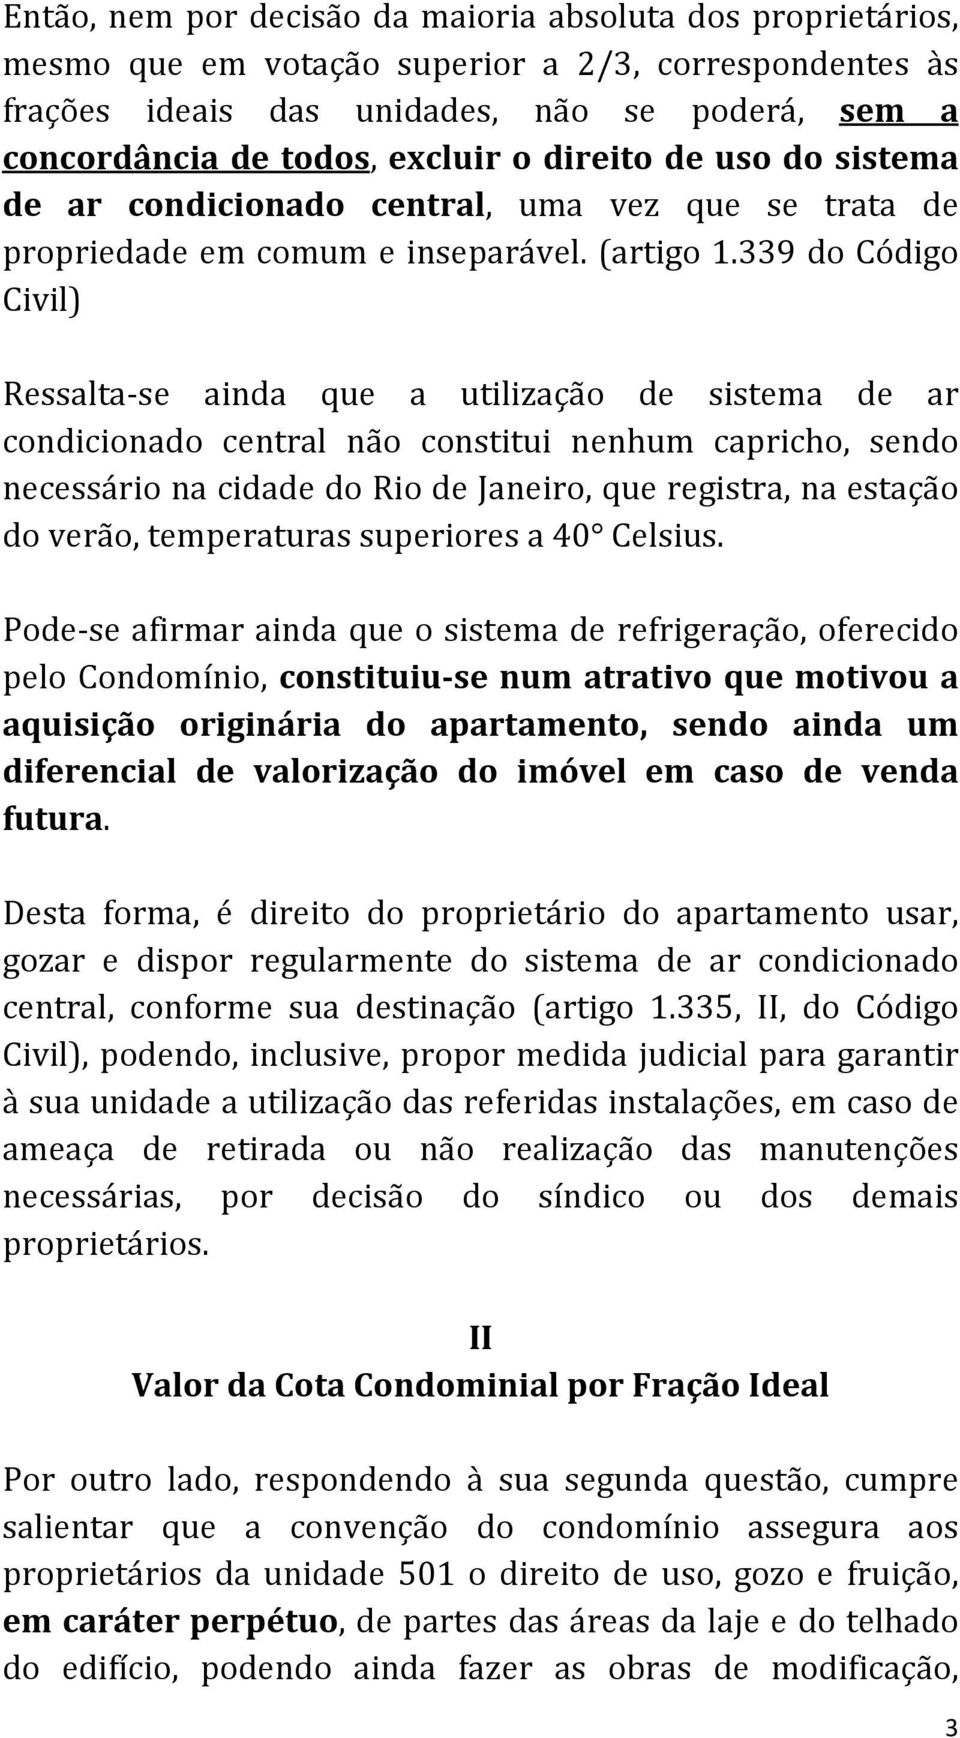 339 do Código Civil) Ressalta- se ainda que a utilização de sistema de ar condicionado central não constitui nenhum capricho, sendo necessário na cidade do Rio de Janeiro, que registra, na estação do